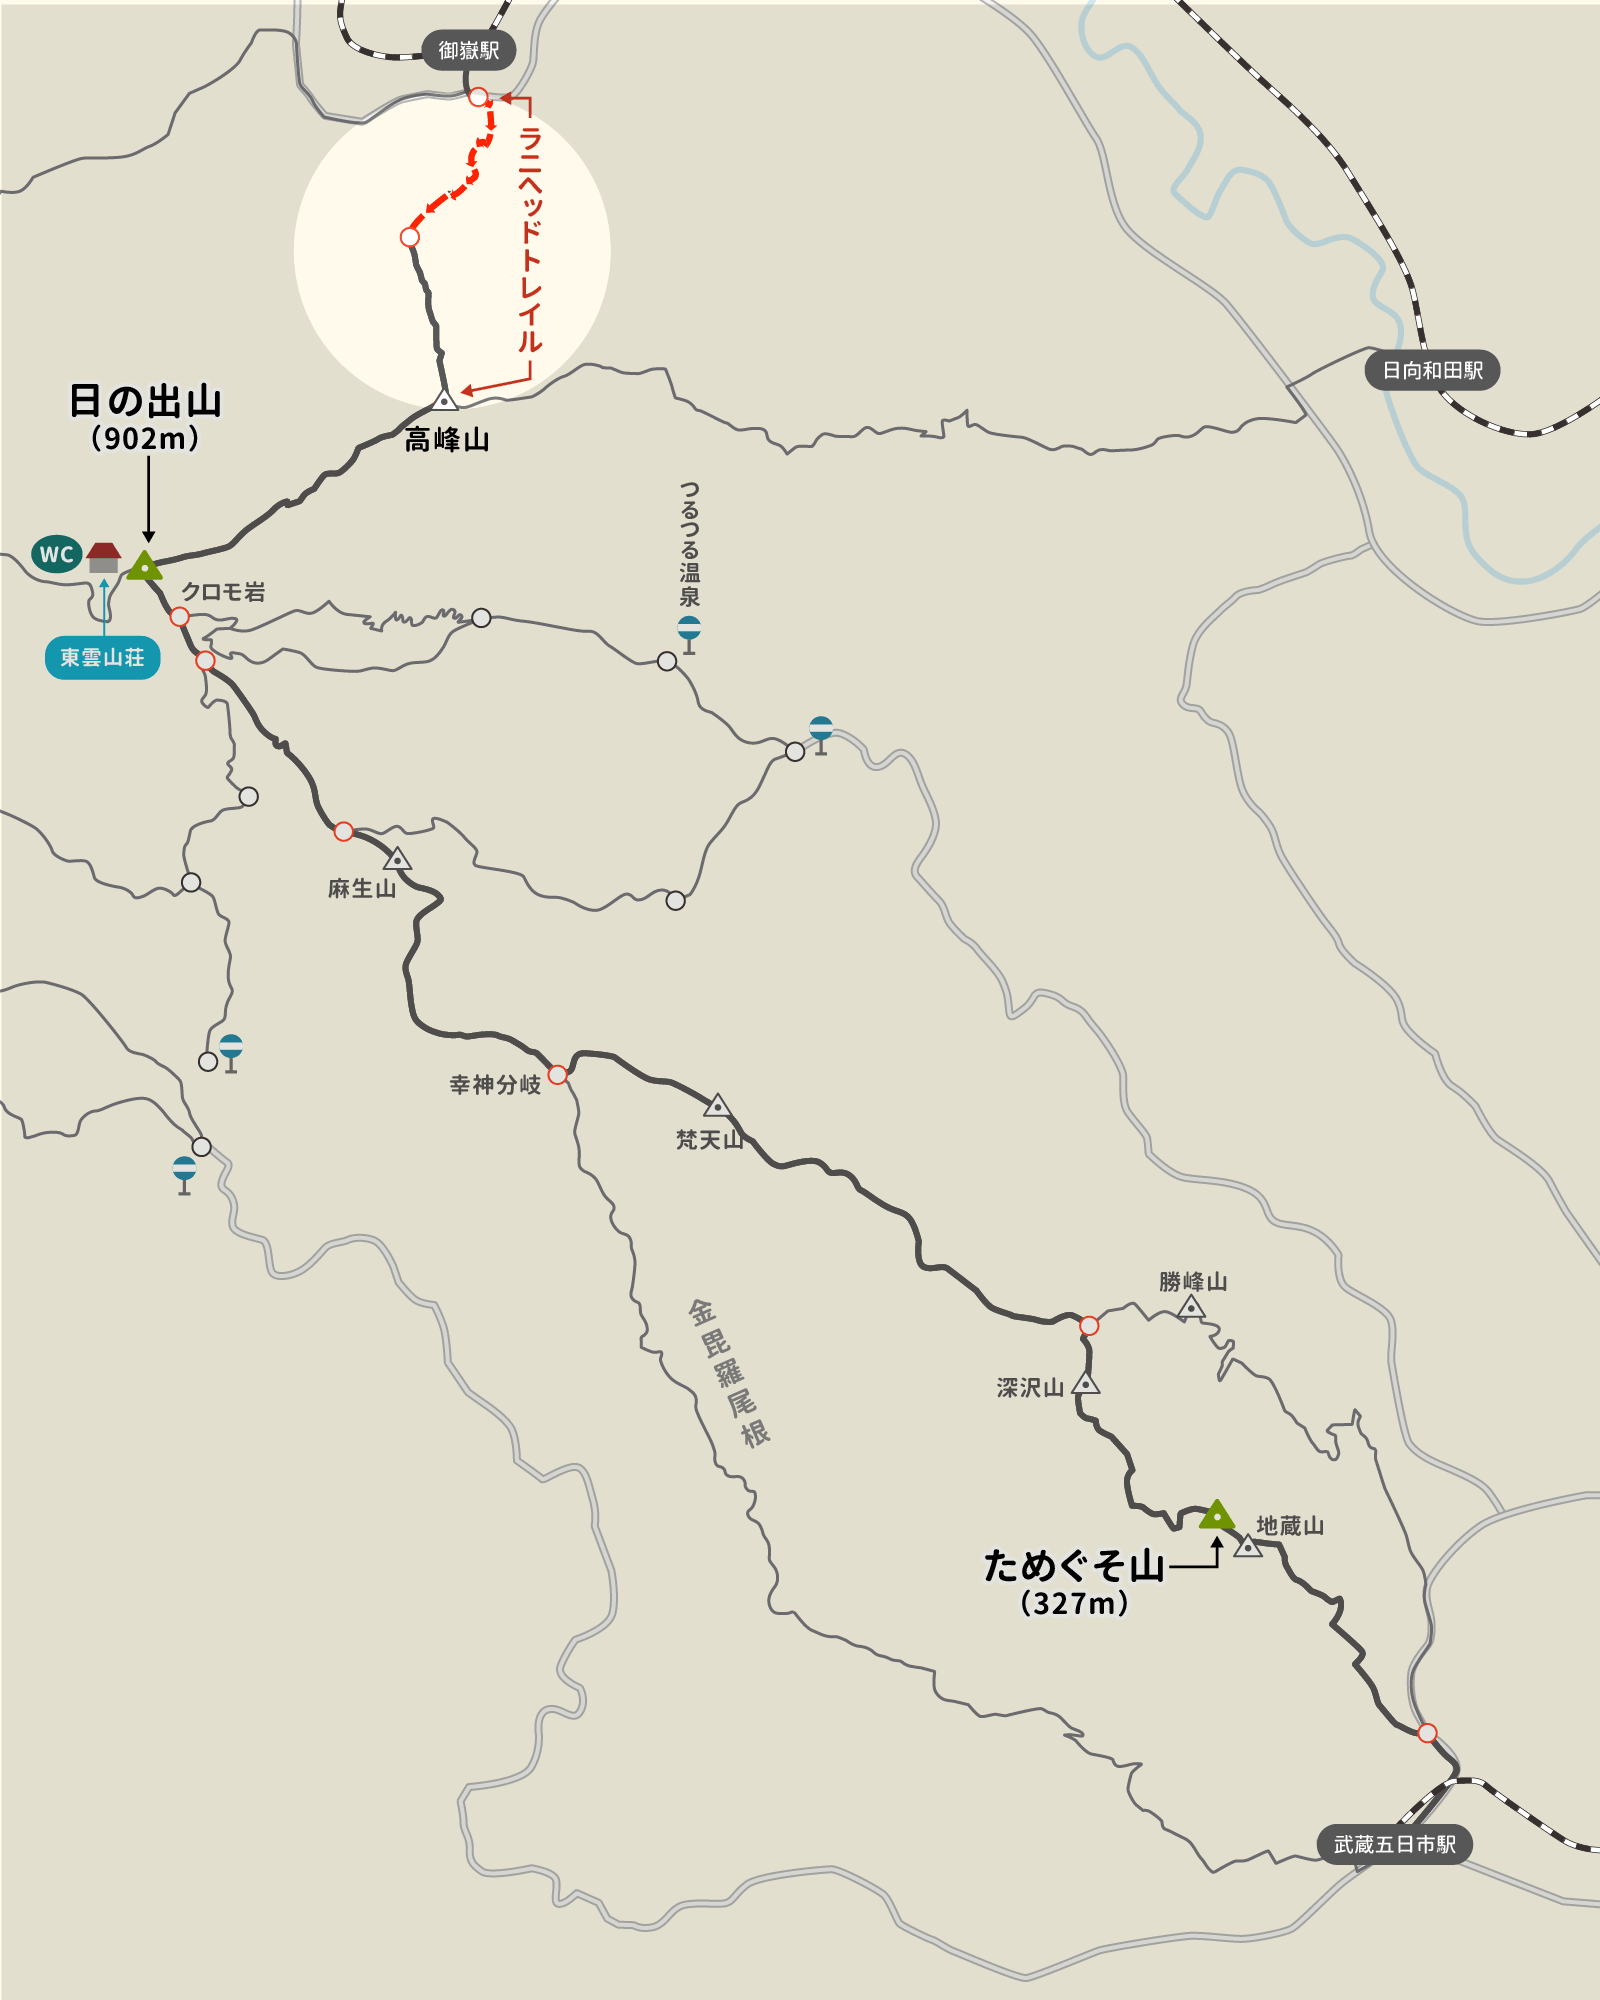 御嶽駅からラニヘッドトレイルまでのイラストマップ